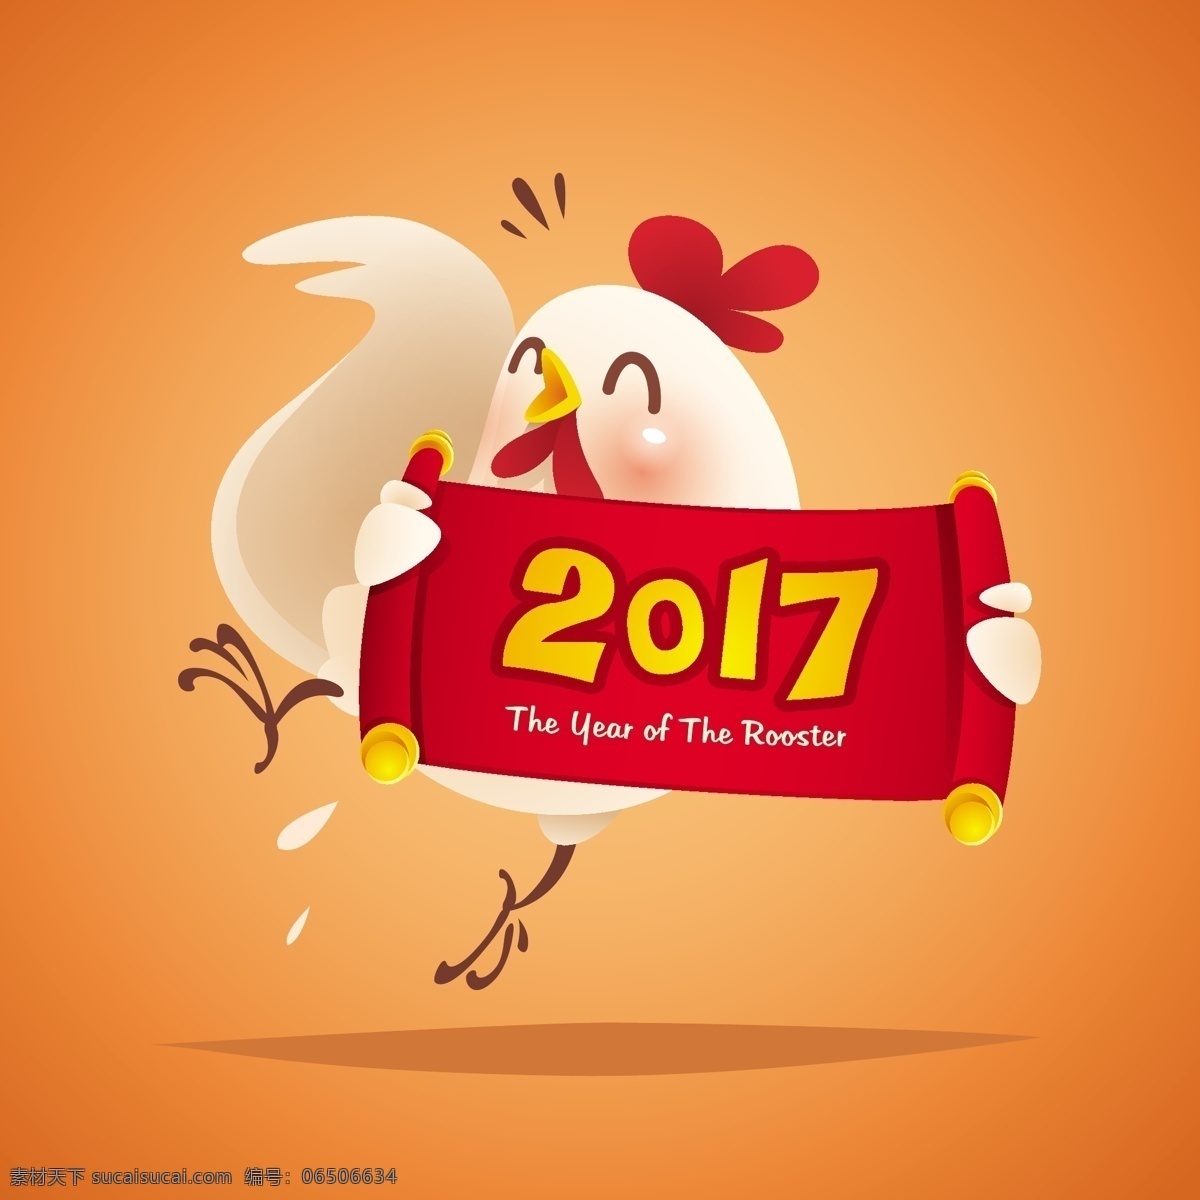 2017 鸡年 卡通 动物 形象 插画 矢量